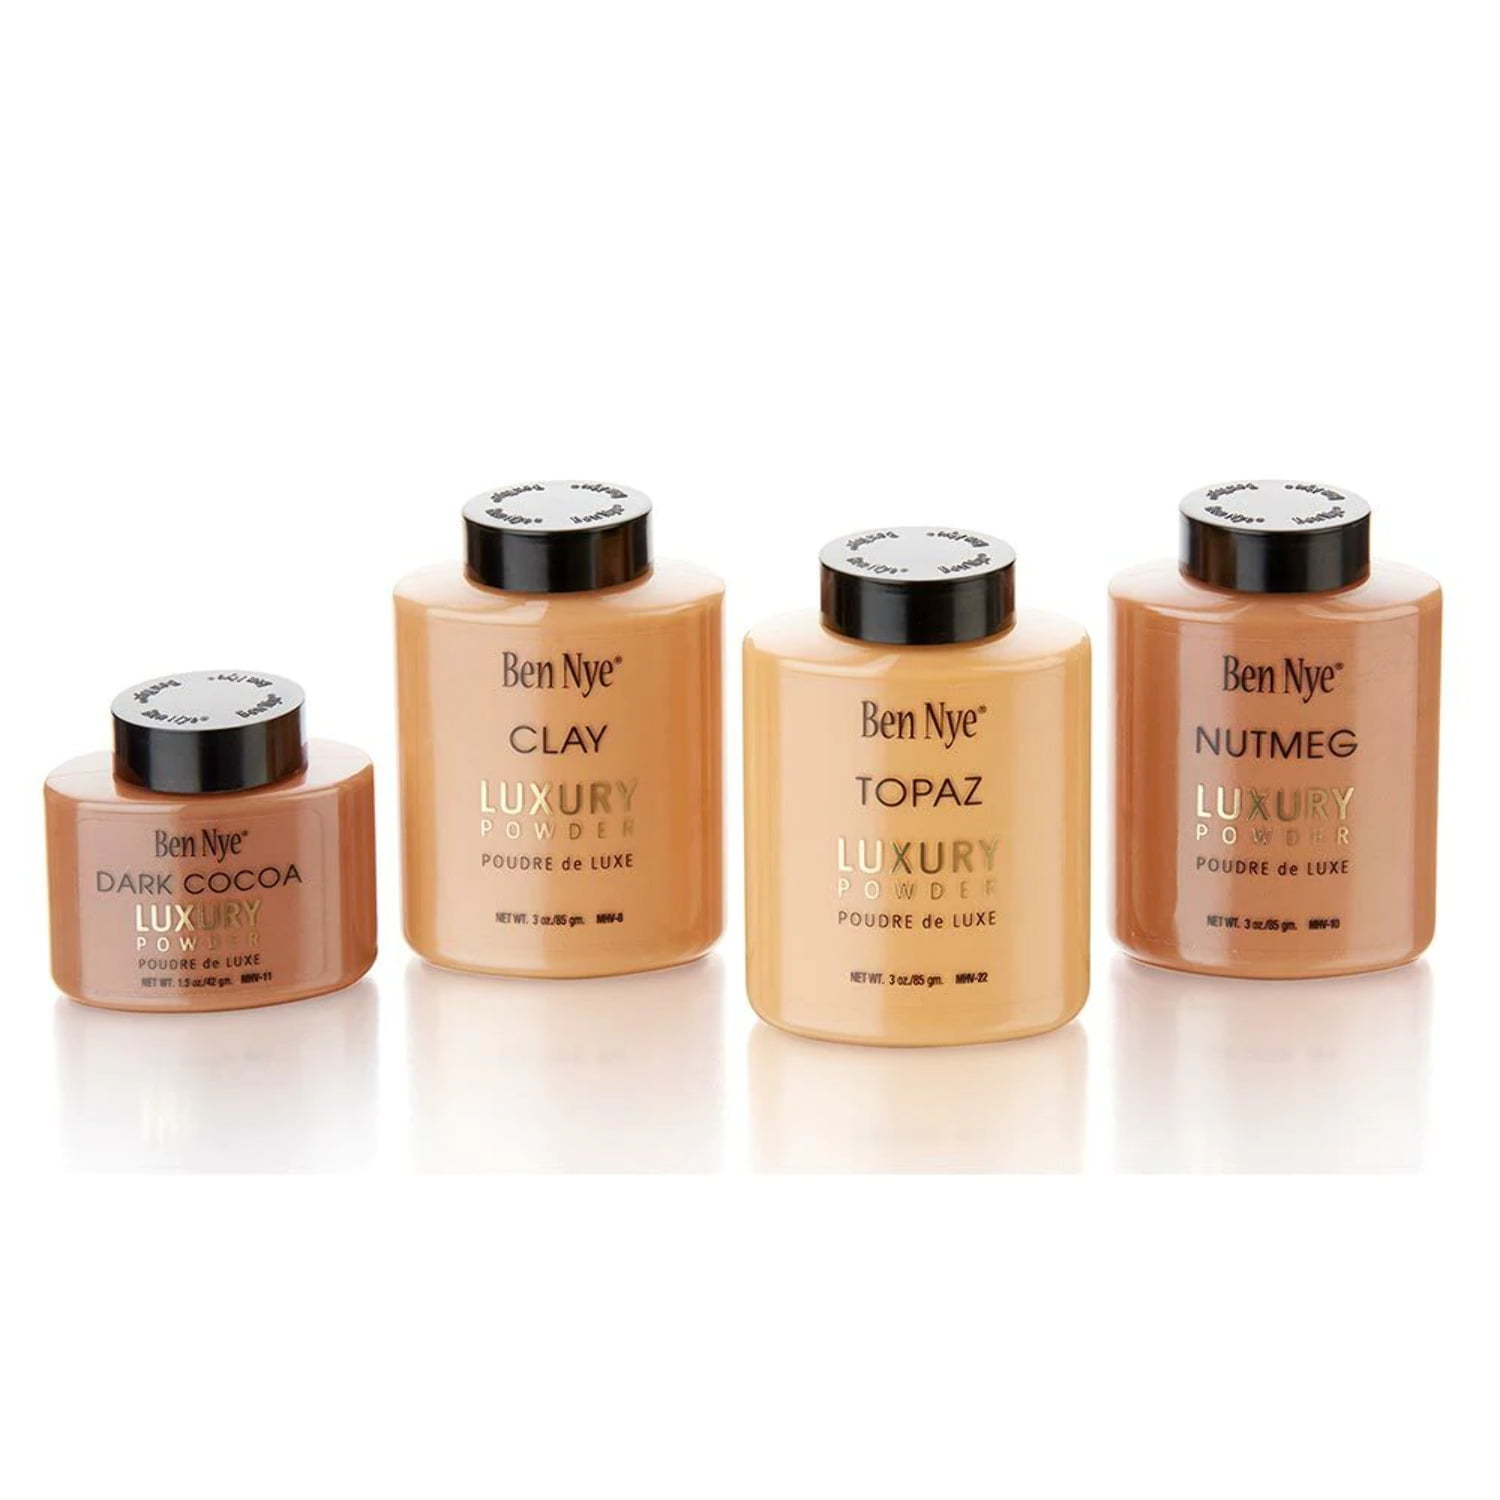 Ben Nye Mojave Luxury Powder (Nutmeg):  